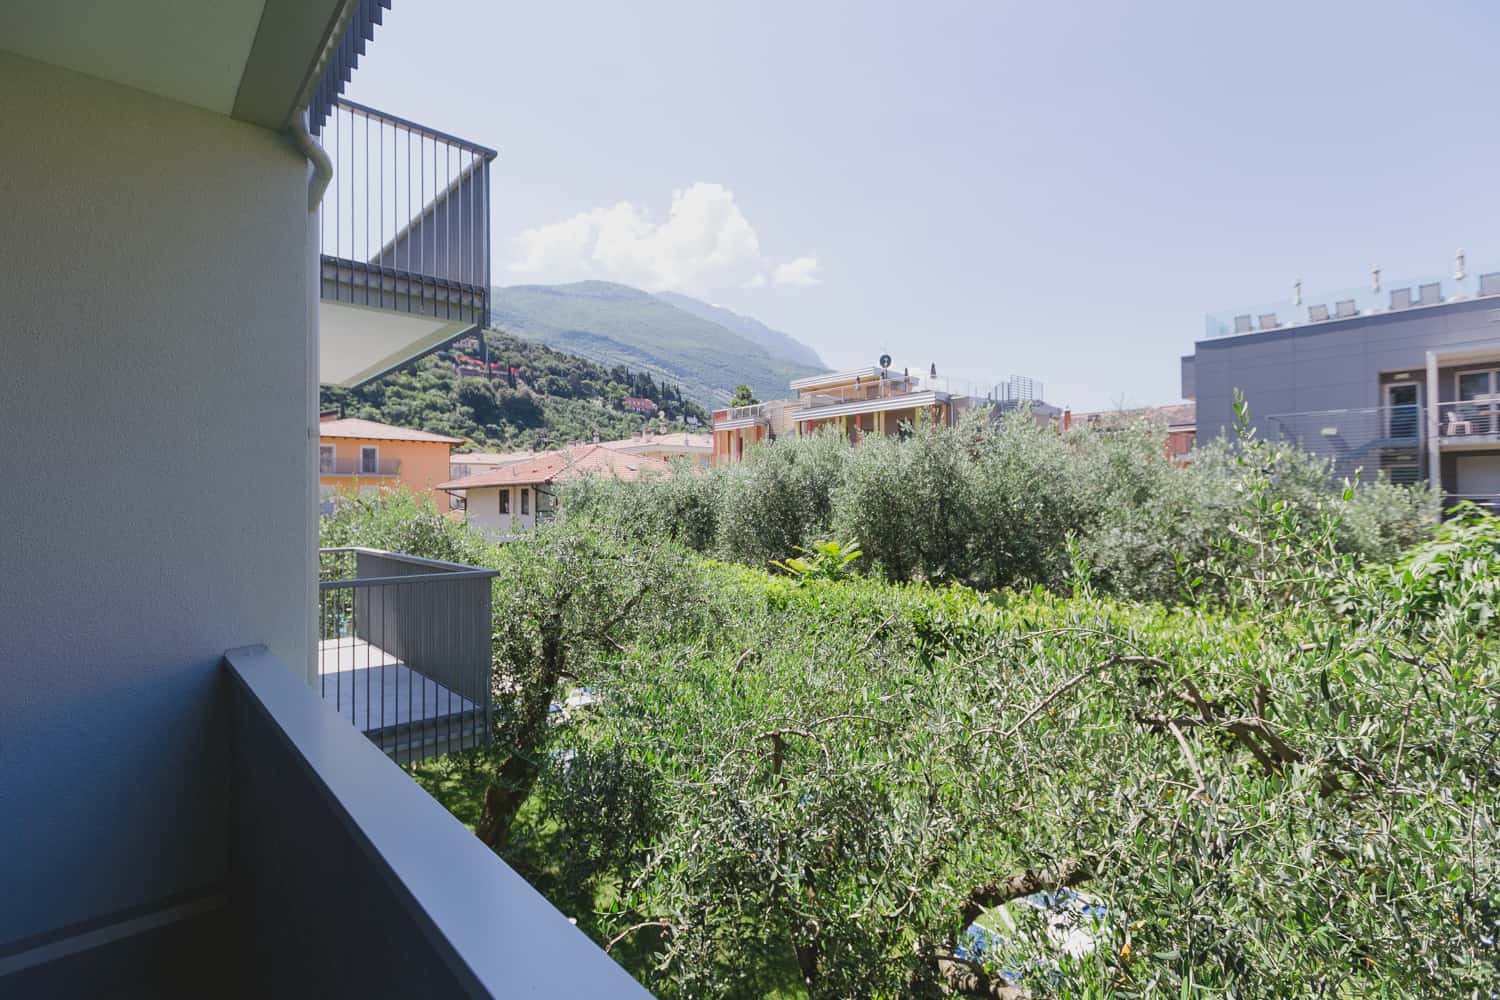 Camere Hotel Torbole Lago di Garda